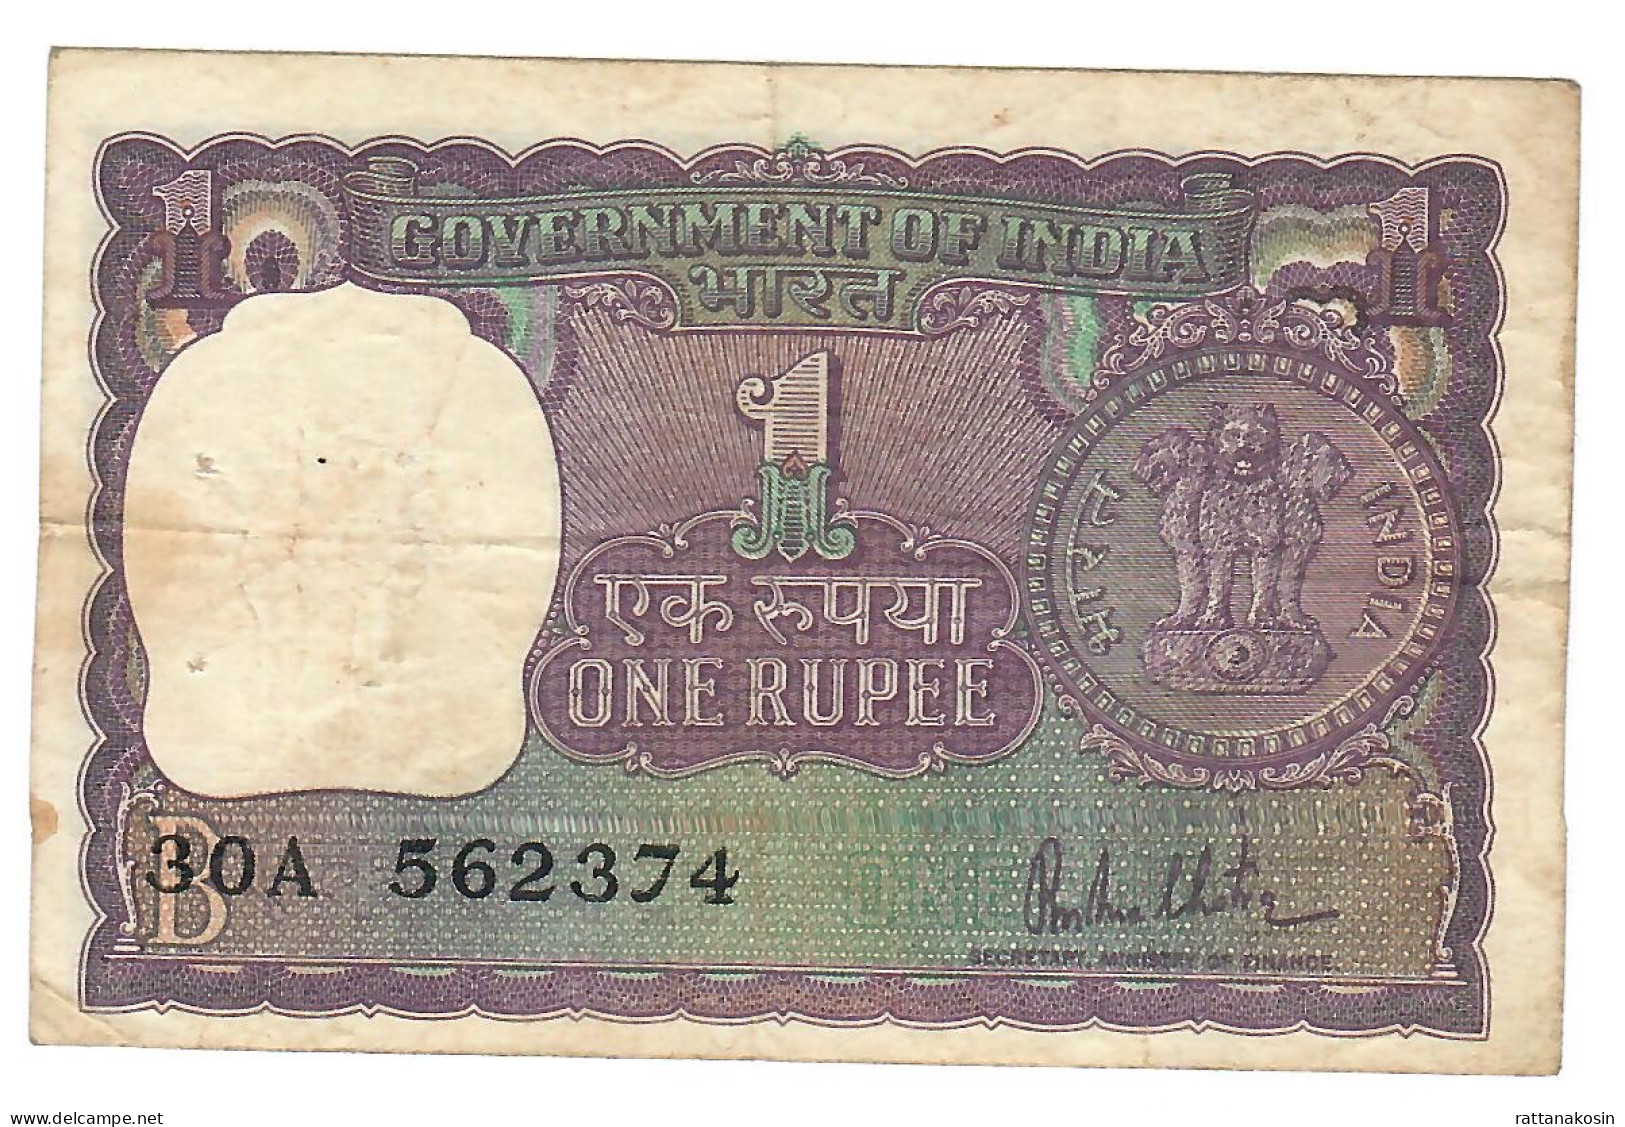 INDIA P77r 1 RUPEE 1980  Signature MALHOTRA  LETTER B    VF 2 P.h. - India